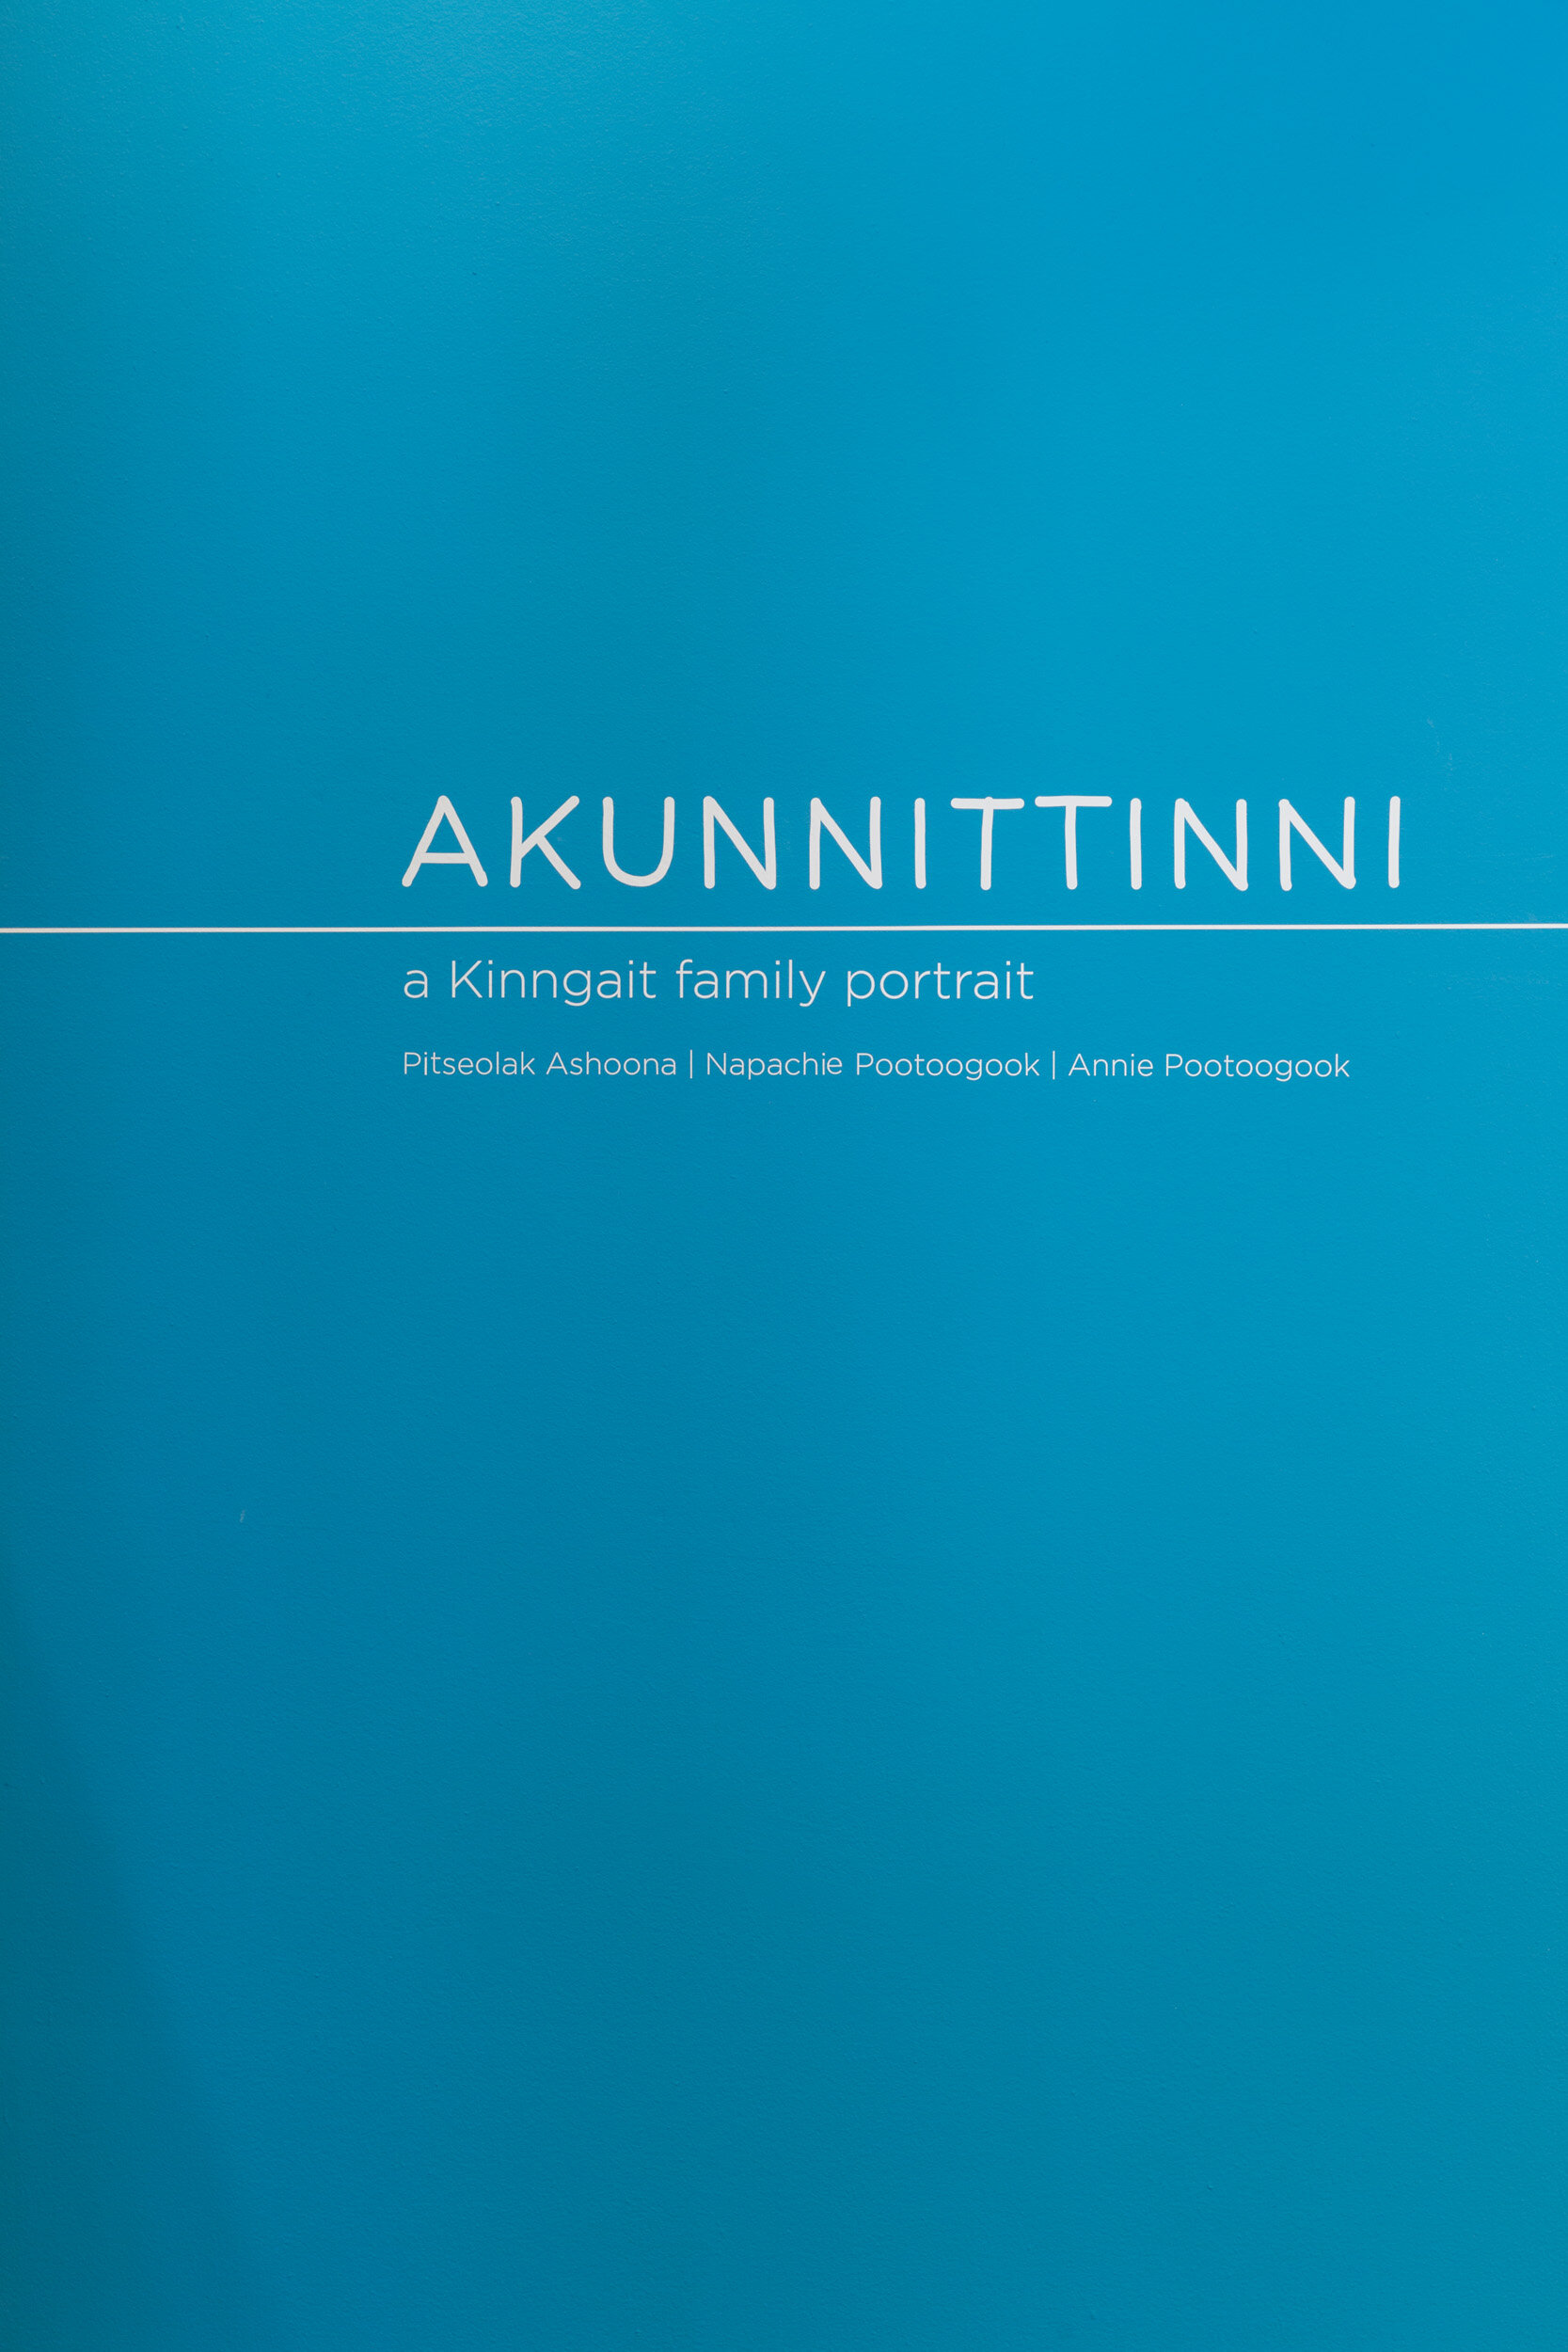 akunnittini-installation-7-slide-show.jpg